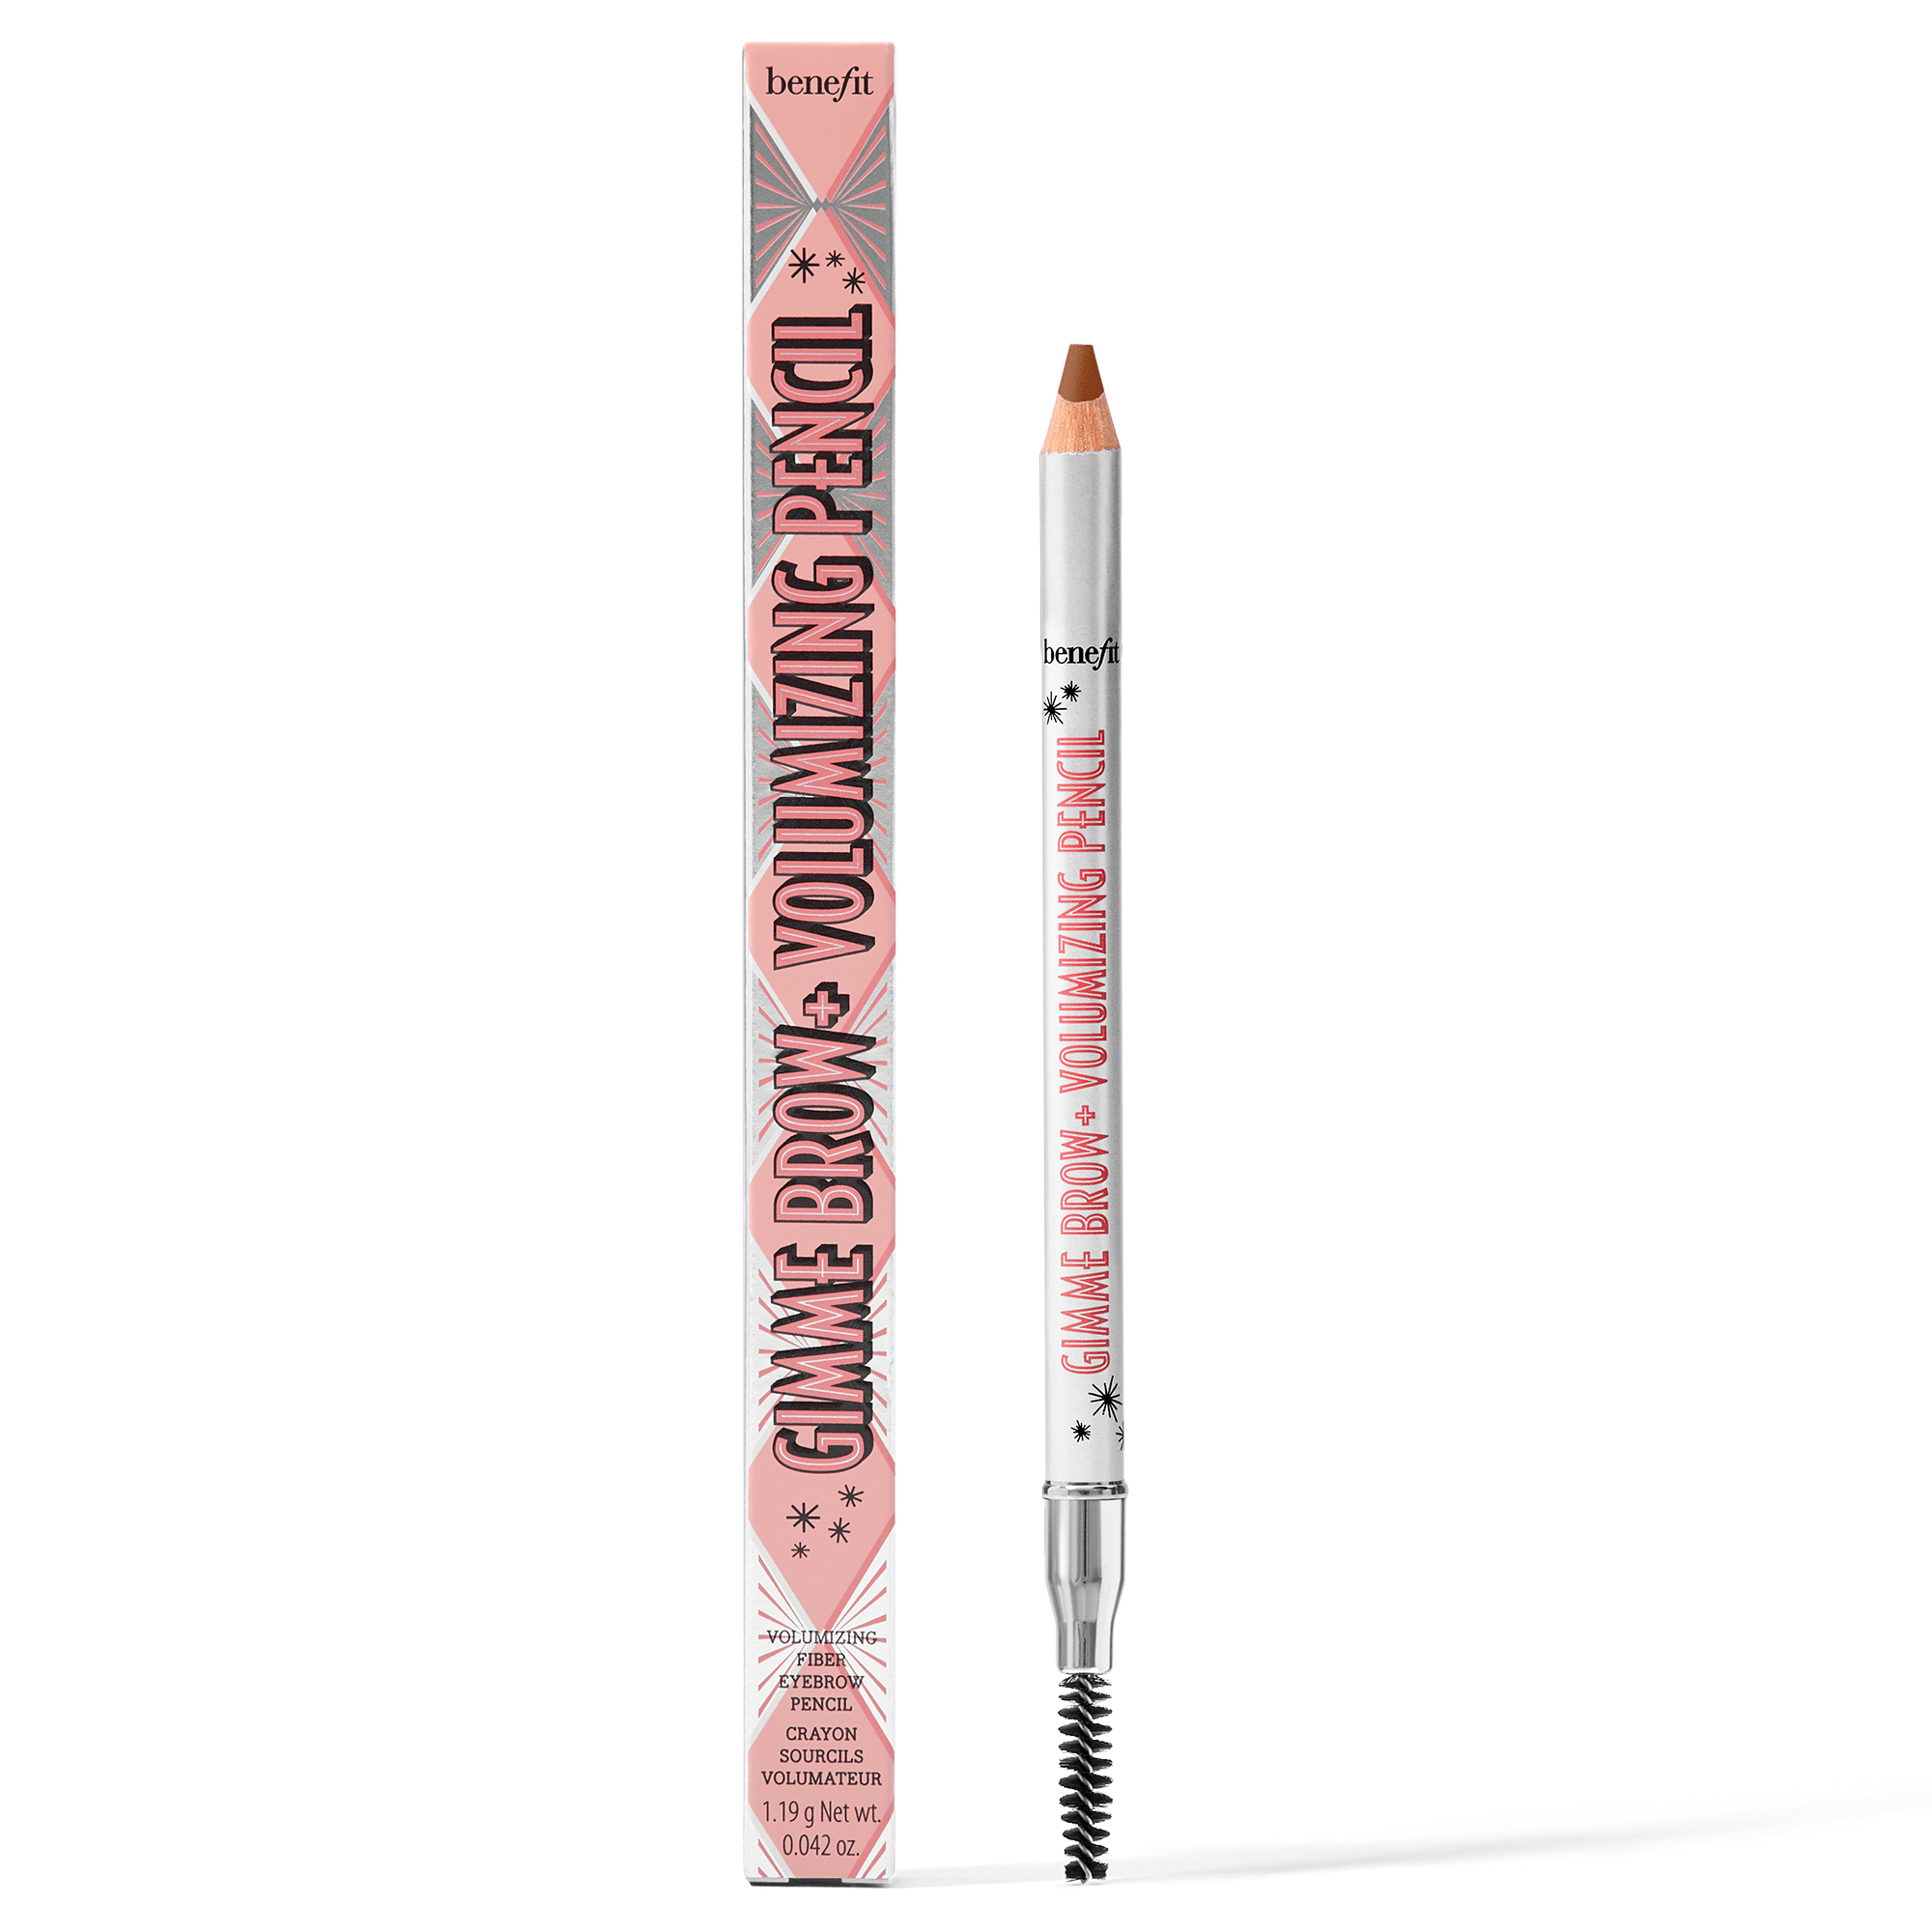 Gimme Brow + Volumizing Fiber Eyebrow Pencil